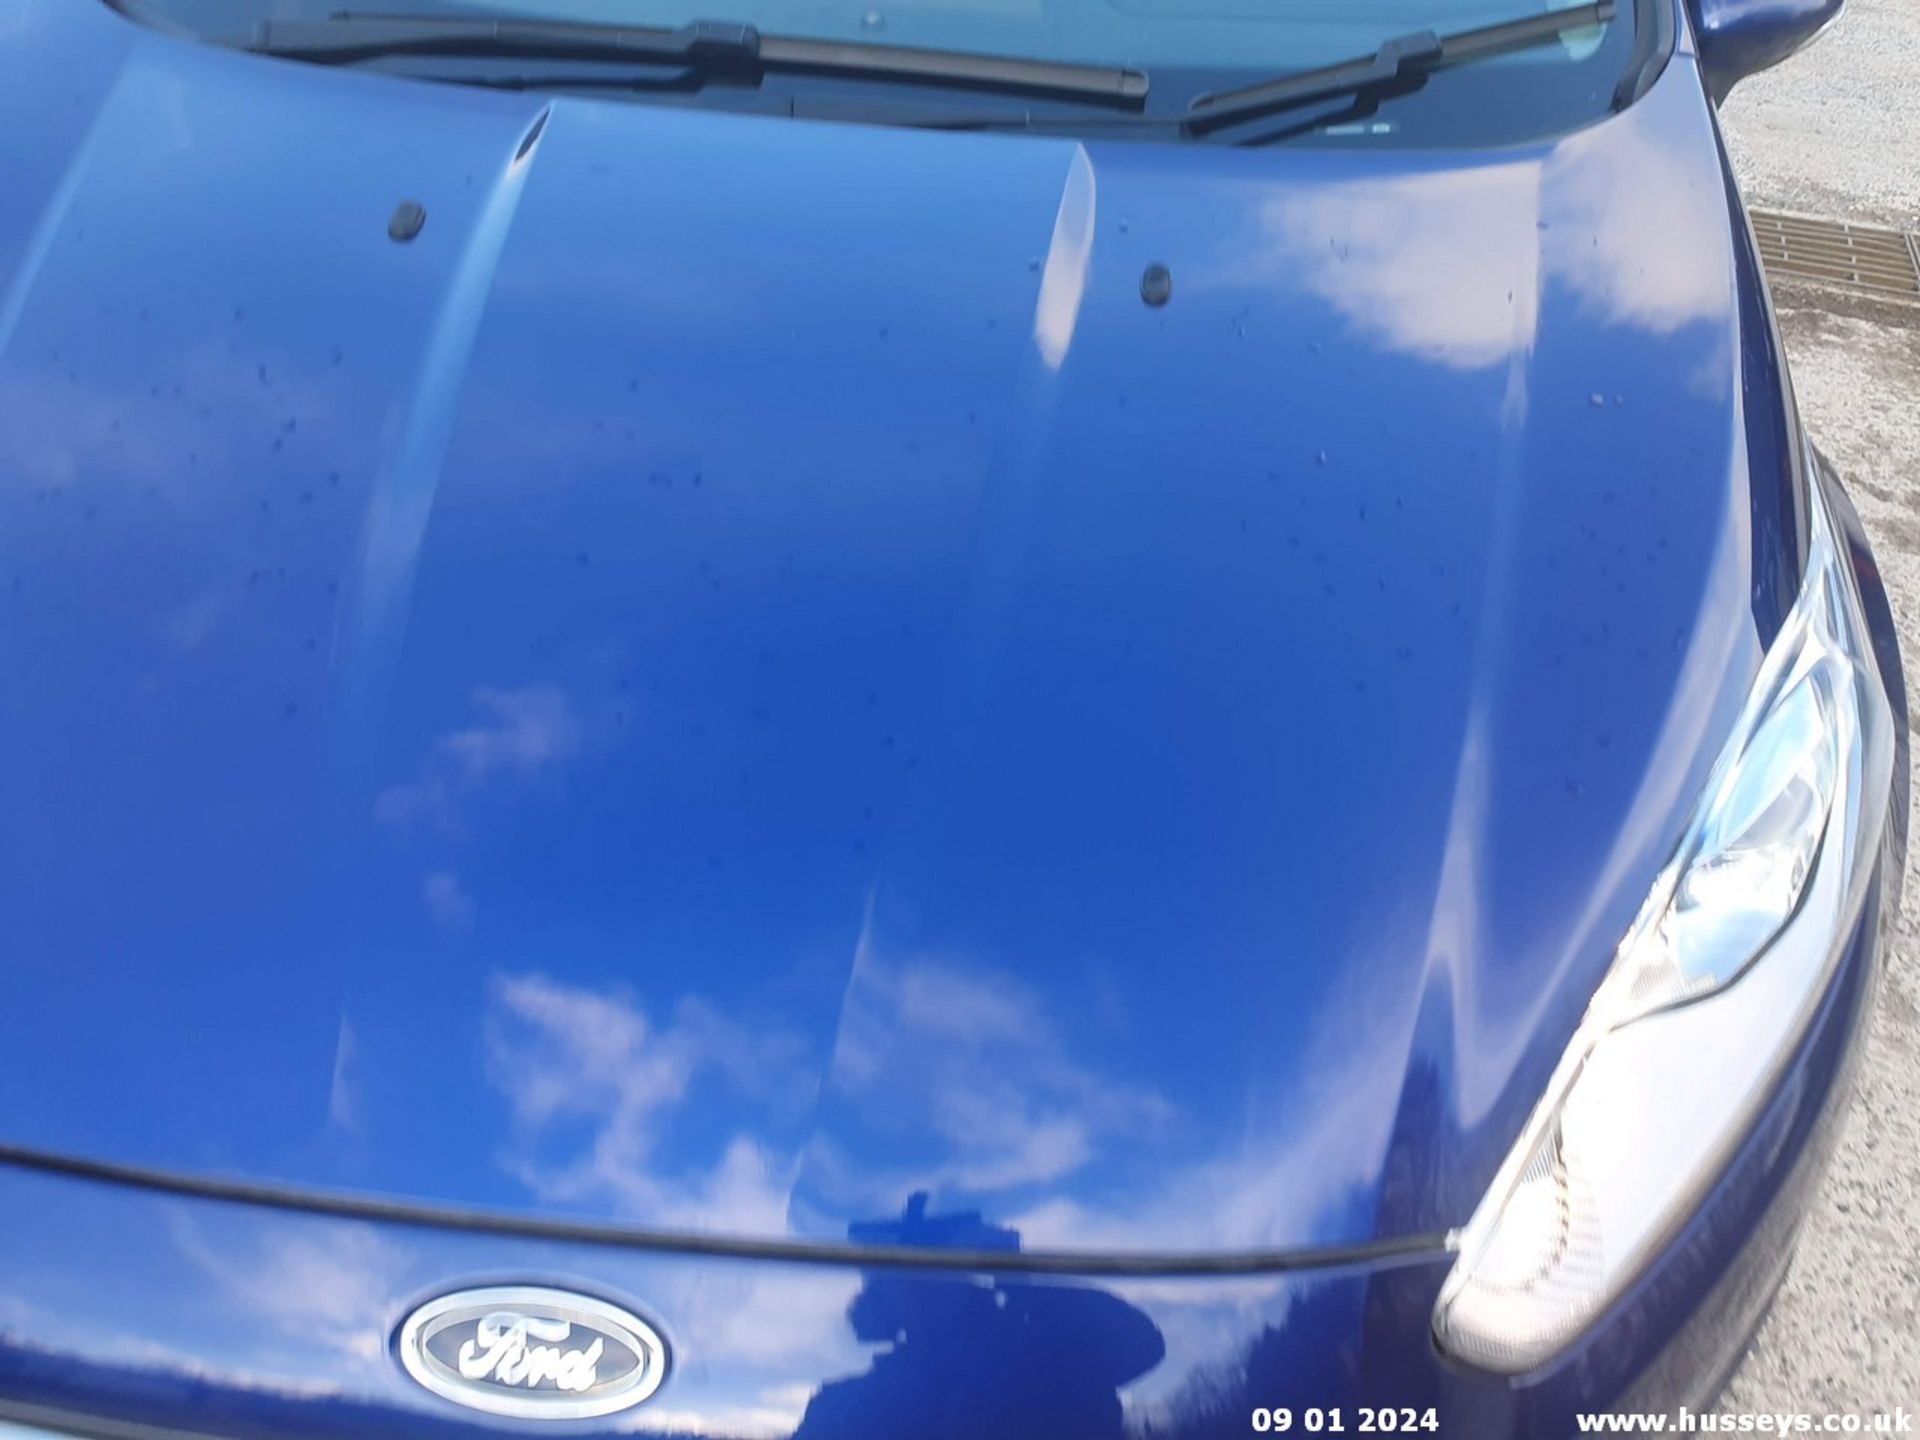 13/63 FORD FIESTA ZETEC - 998cc 5dr Hatchback (Blue, 52k) - Image 24 of 42